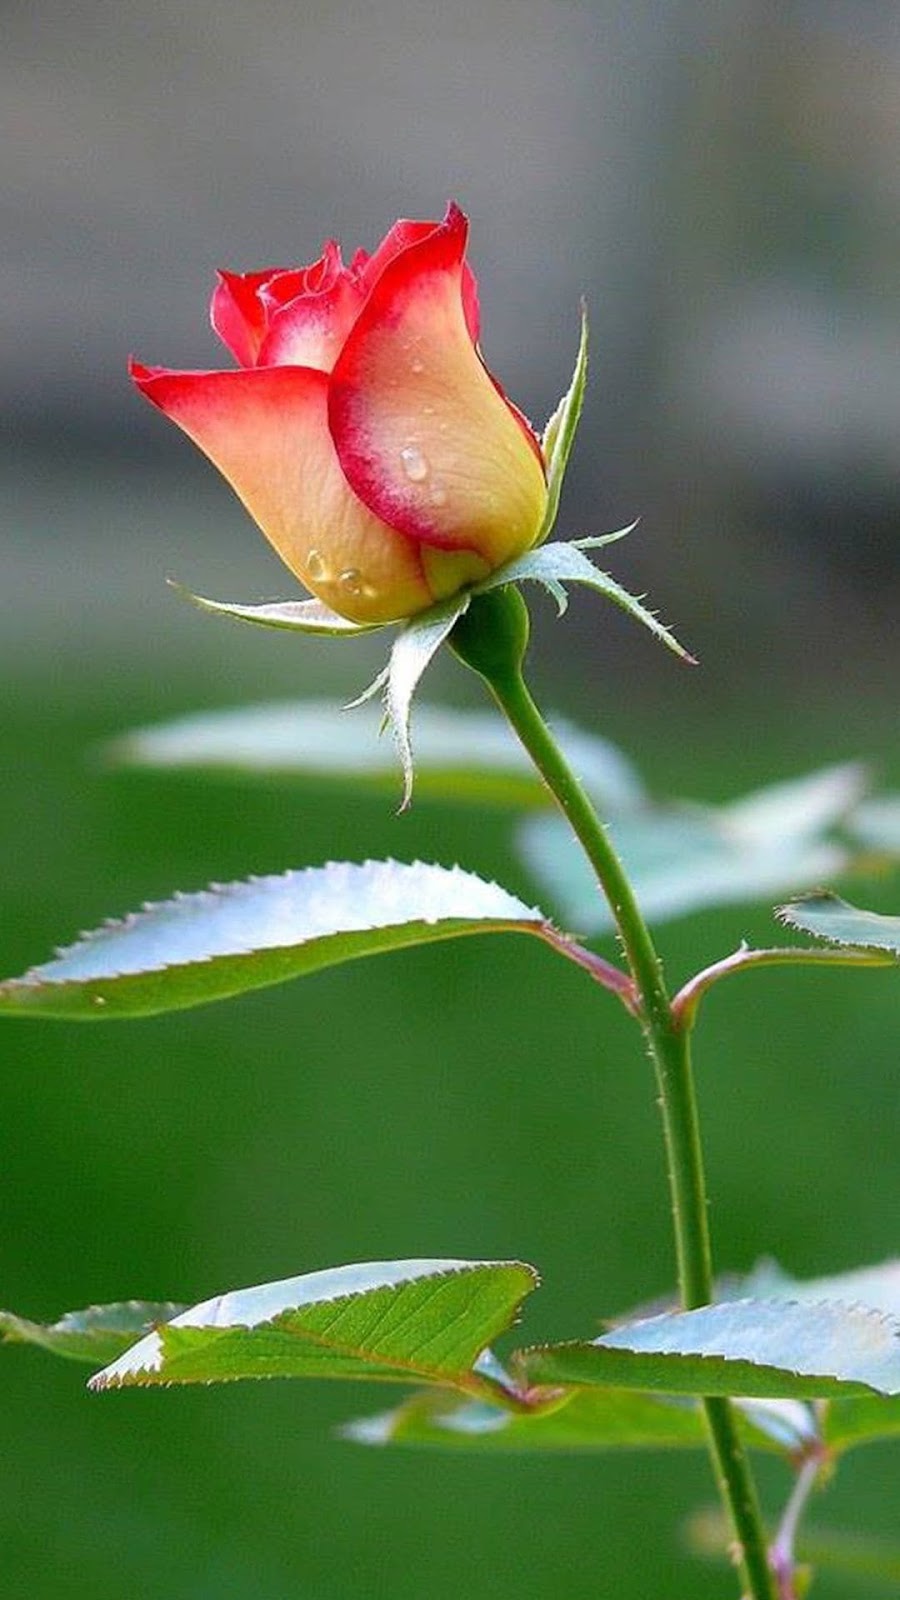 নতুন গোলাপ ফুলের ছবি - গোলাপ ফুলের বাগানের ছবি - rose garden - NeotericIT.com